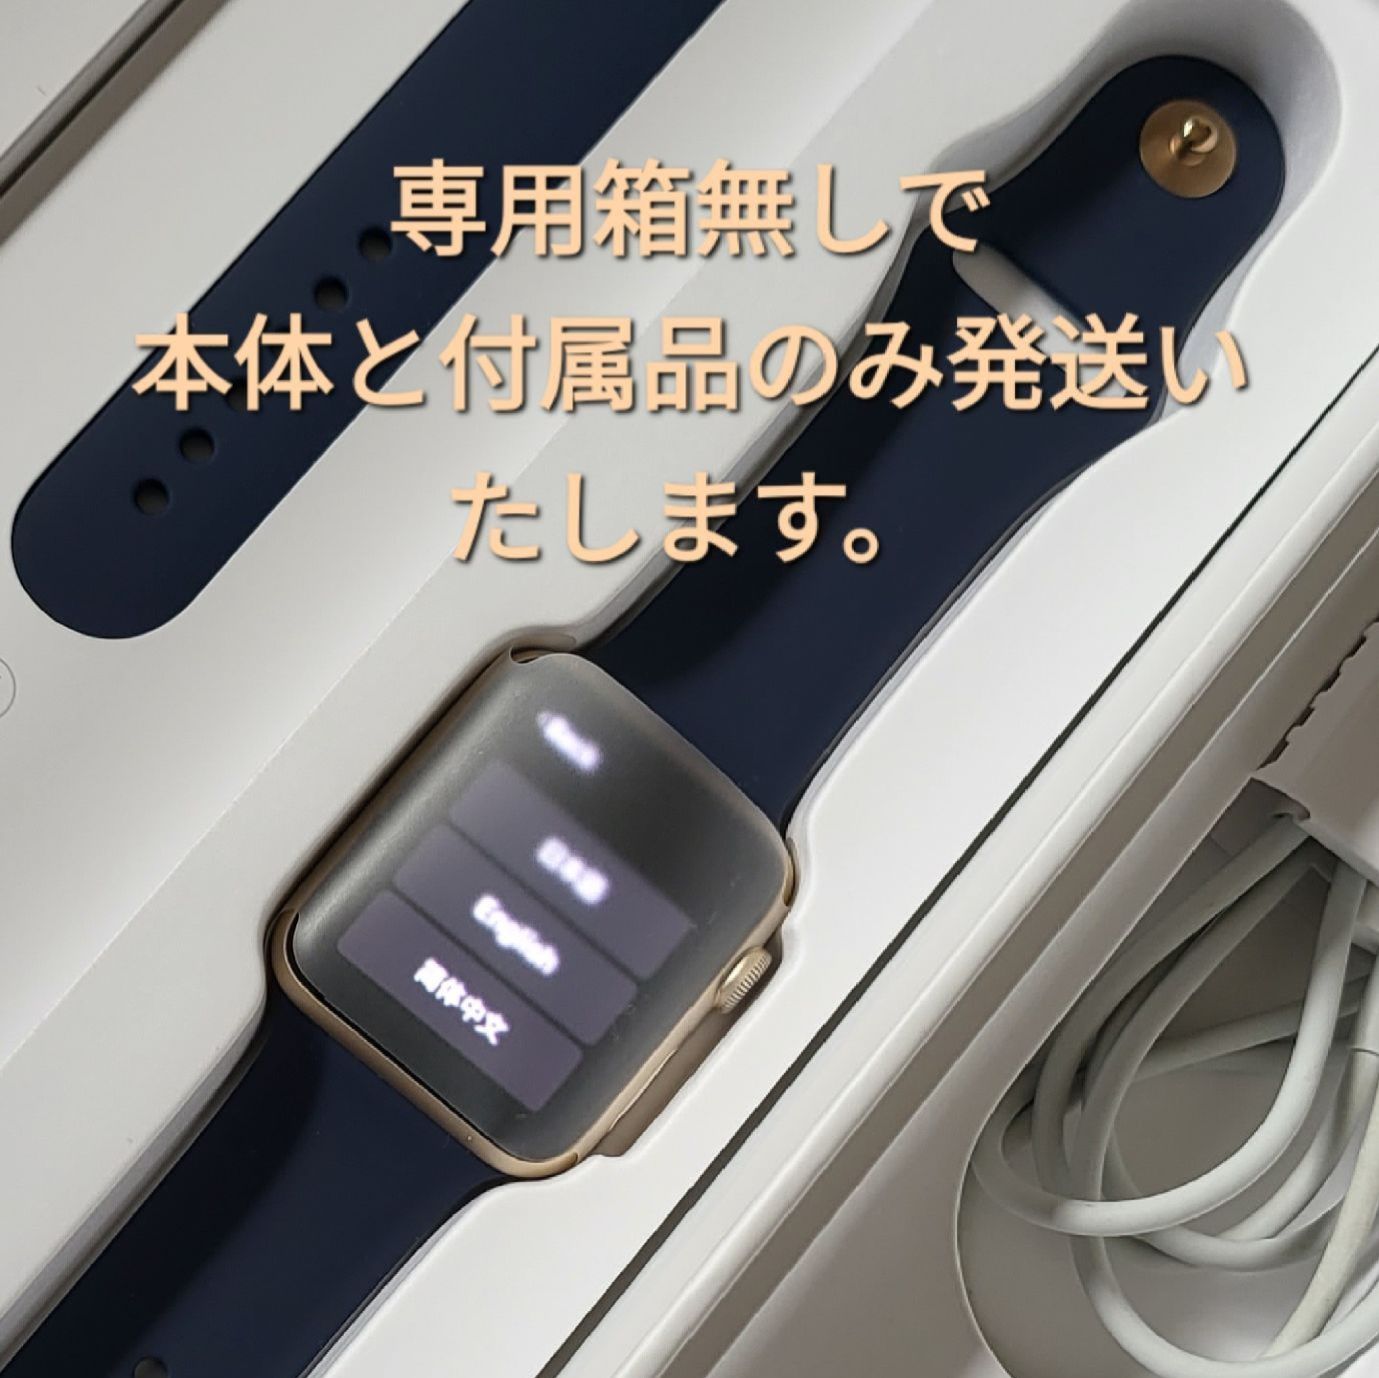 ☆美品 Apple watch 2 42mm ☆値下げ！！（本体と付属品のみ専用箱無し